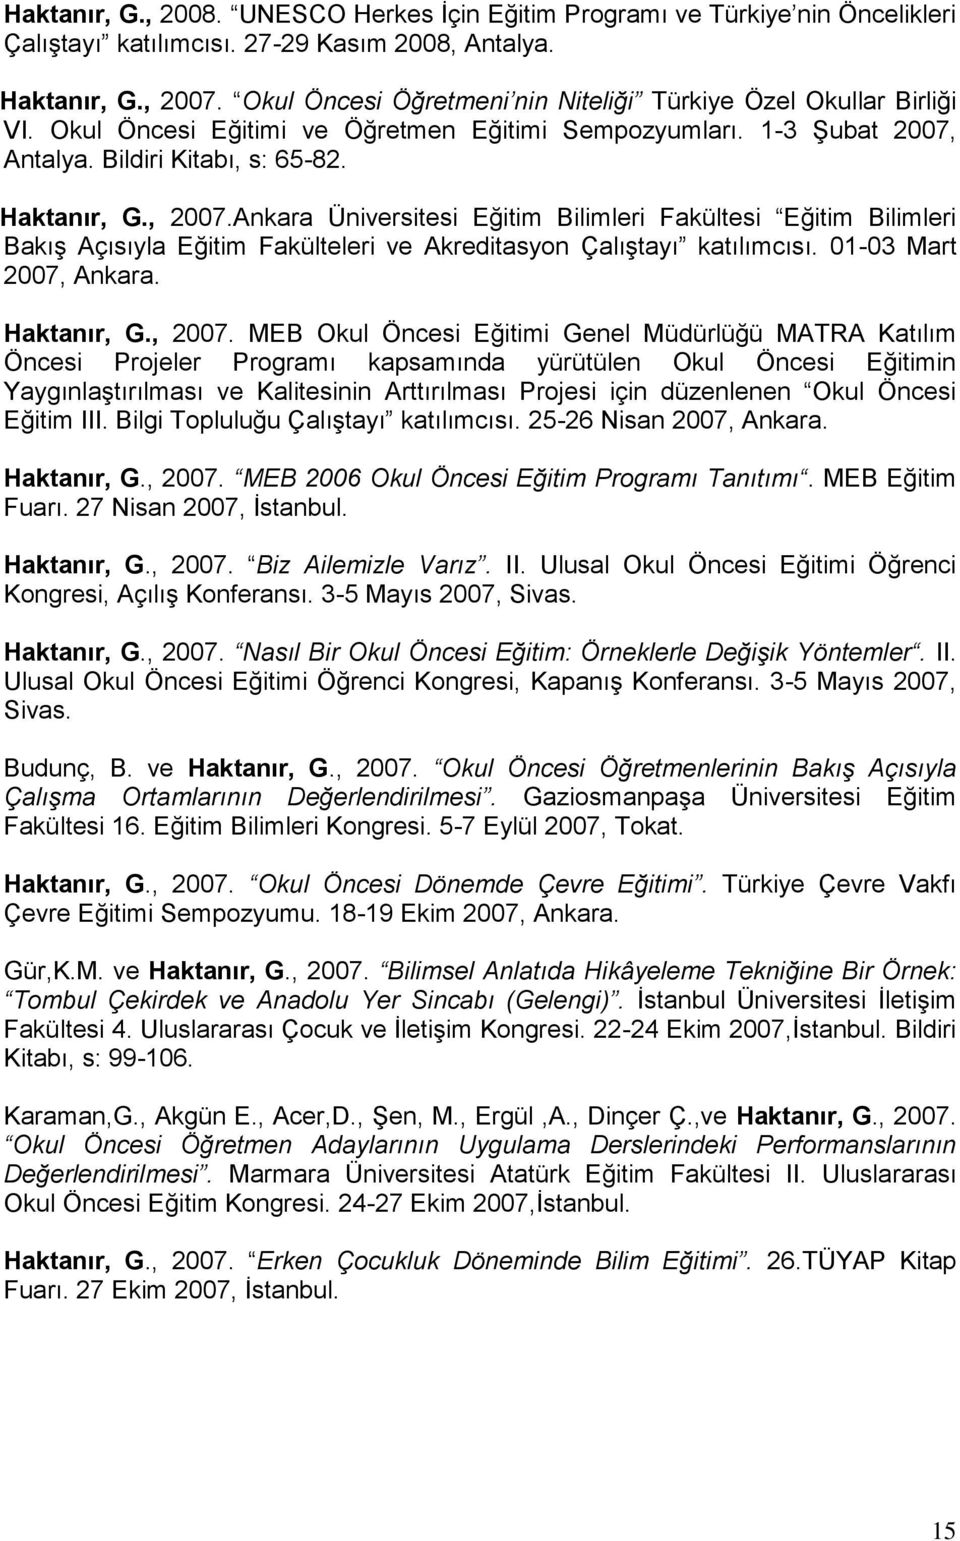 Ankara Üniversitesi Eğitim Bilimleri Fakültesi Eğitim Bilimleri Bakış Açısıyla Eğitim Fakülteleri ve Akreditasyon Çalıştayı katılımcısı. 01-03 Mart 2007, Ankara. Haktanır, G., 2007.